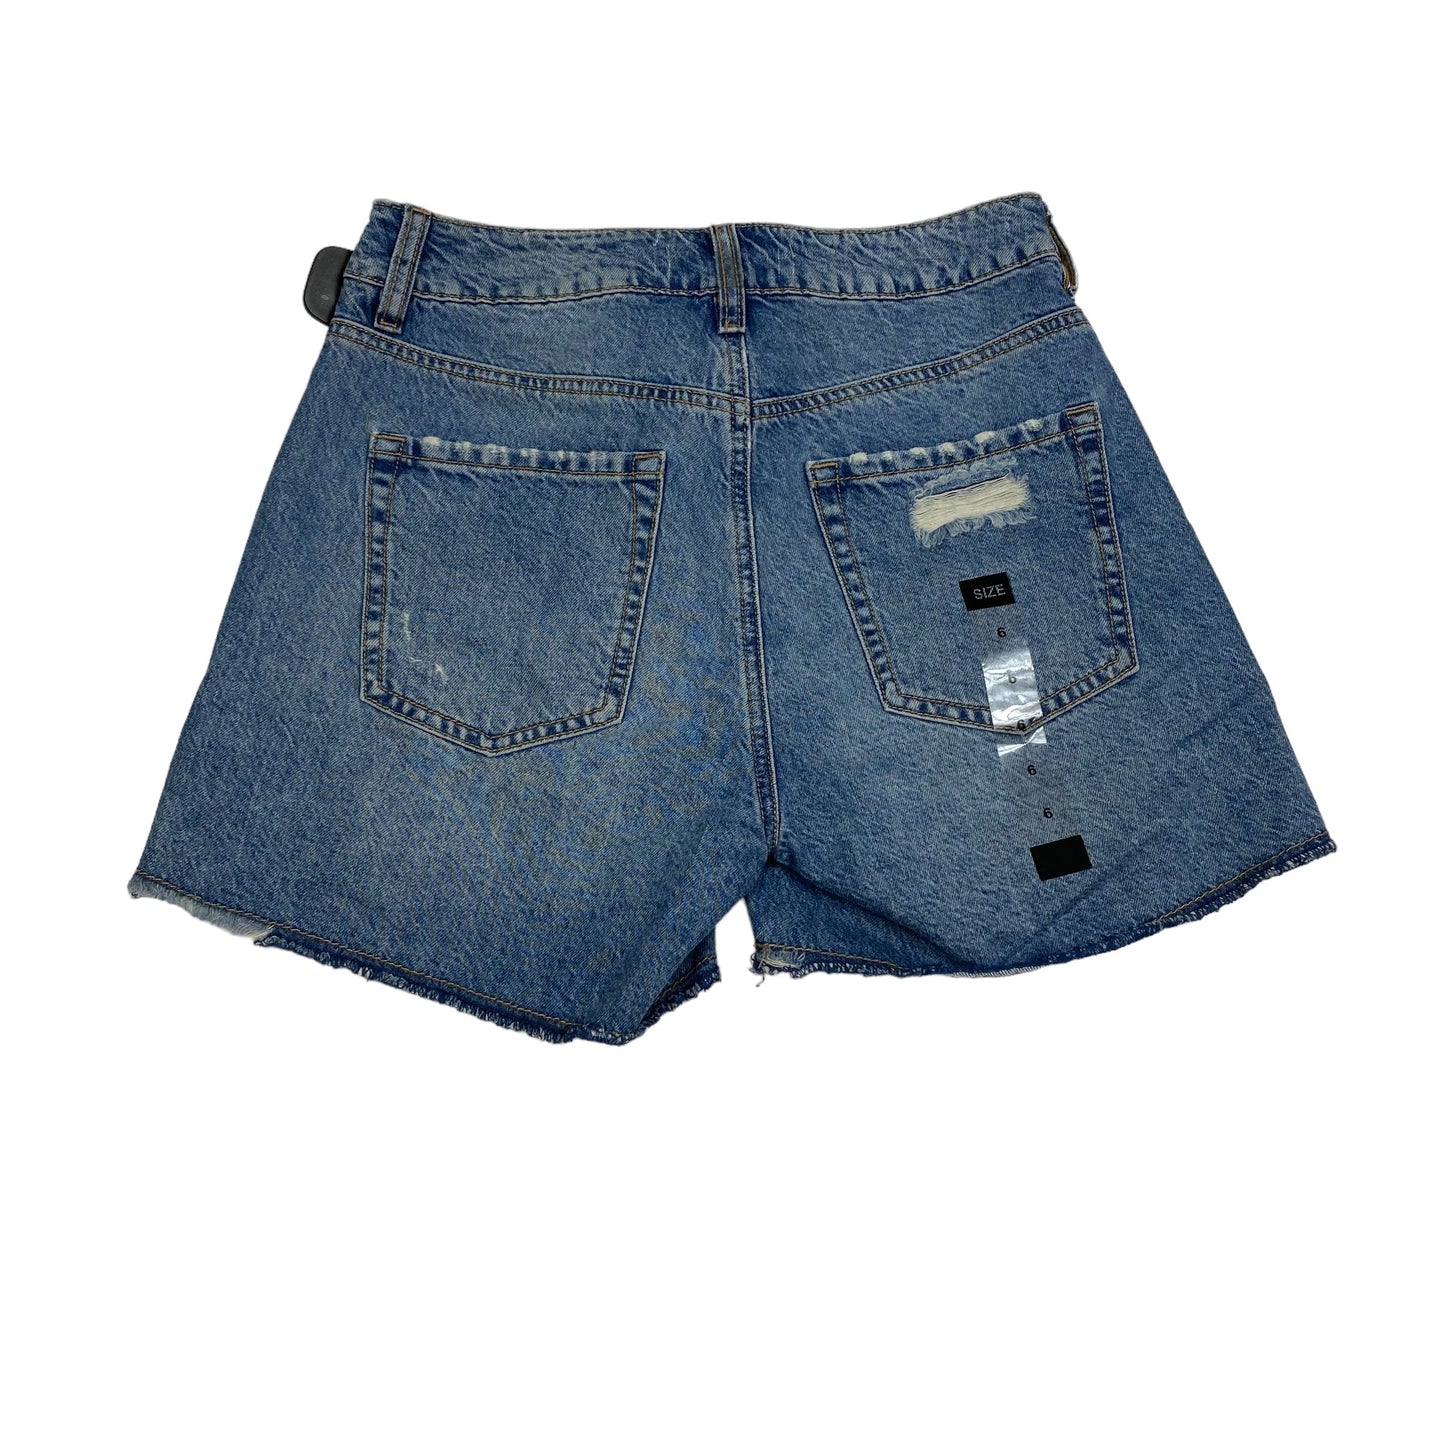 Blue Denim Shorts Zara, Size 6